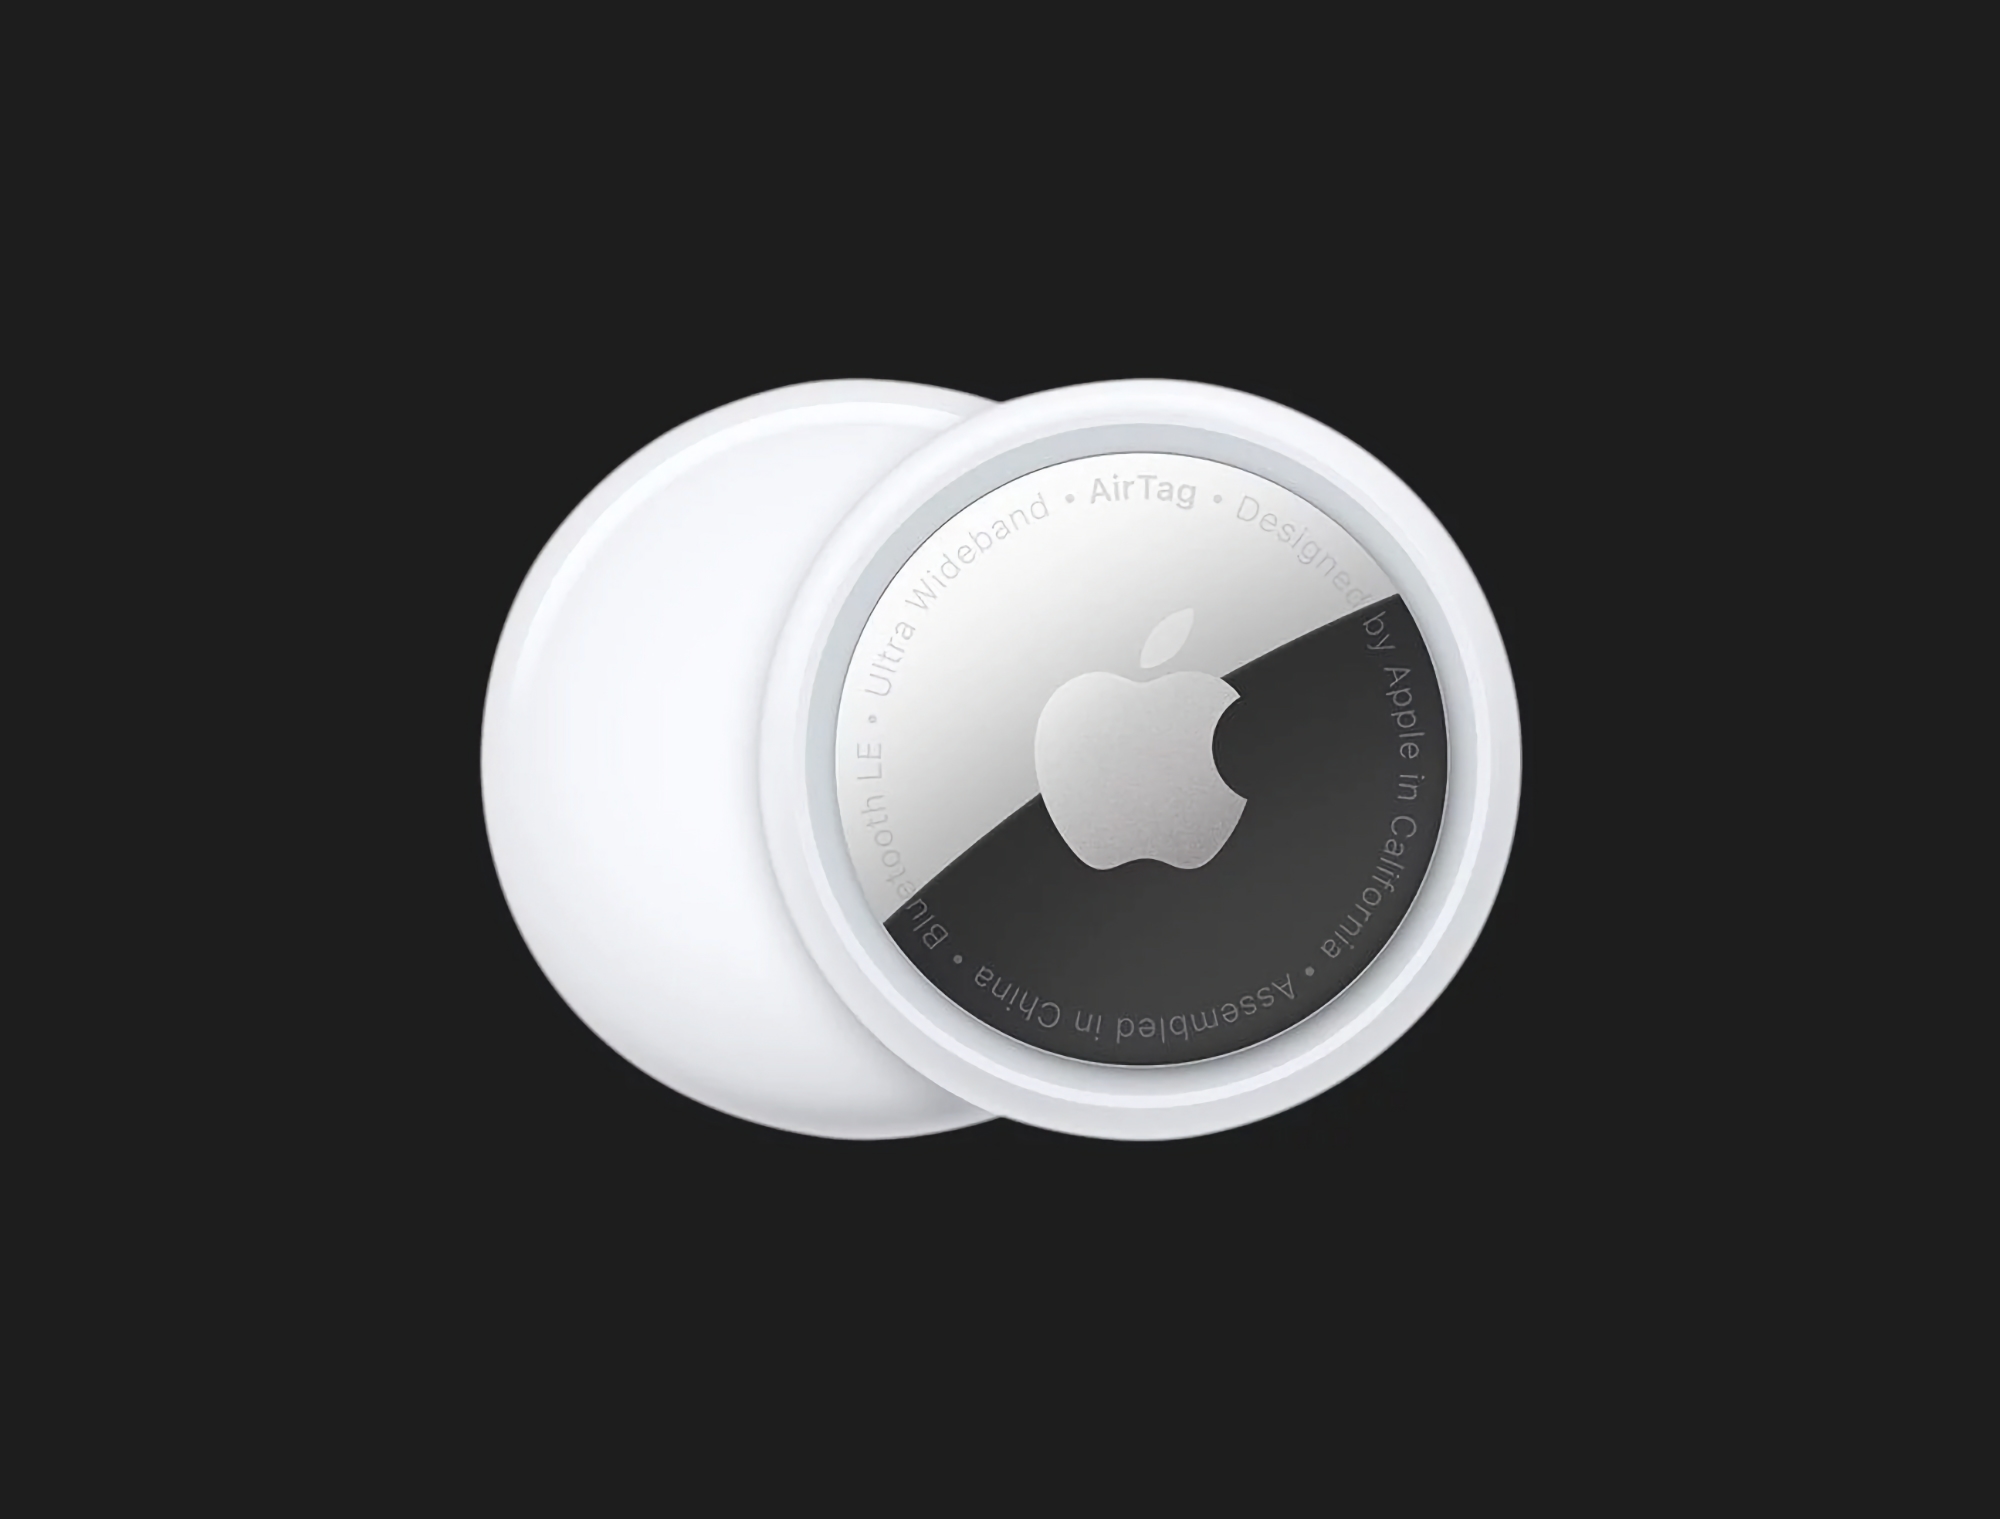 En uppsättning med 4 Apple AirTags är tillgänglig på Amazon med en rabatt på 20 USD